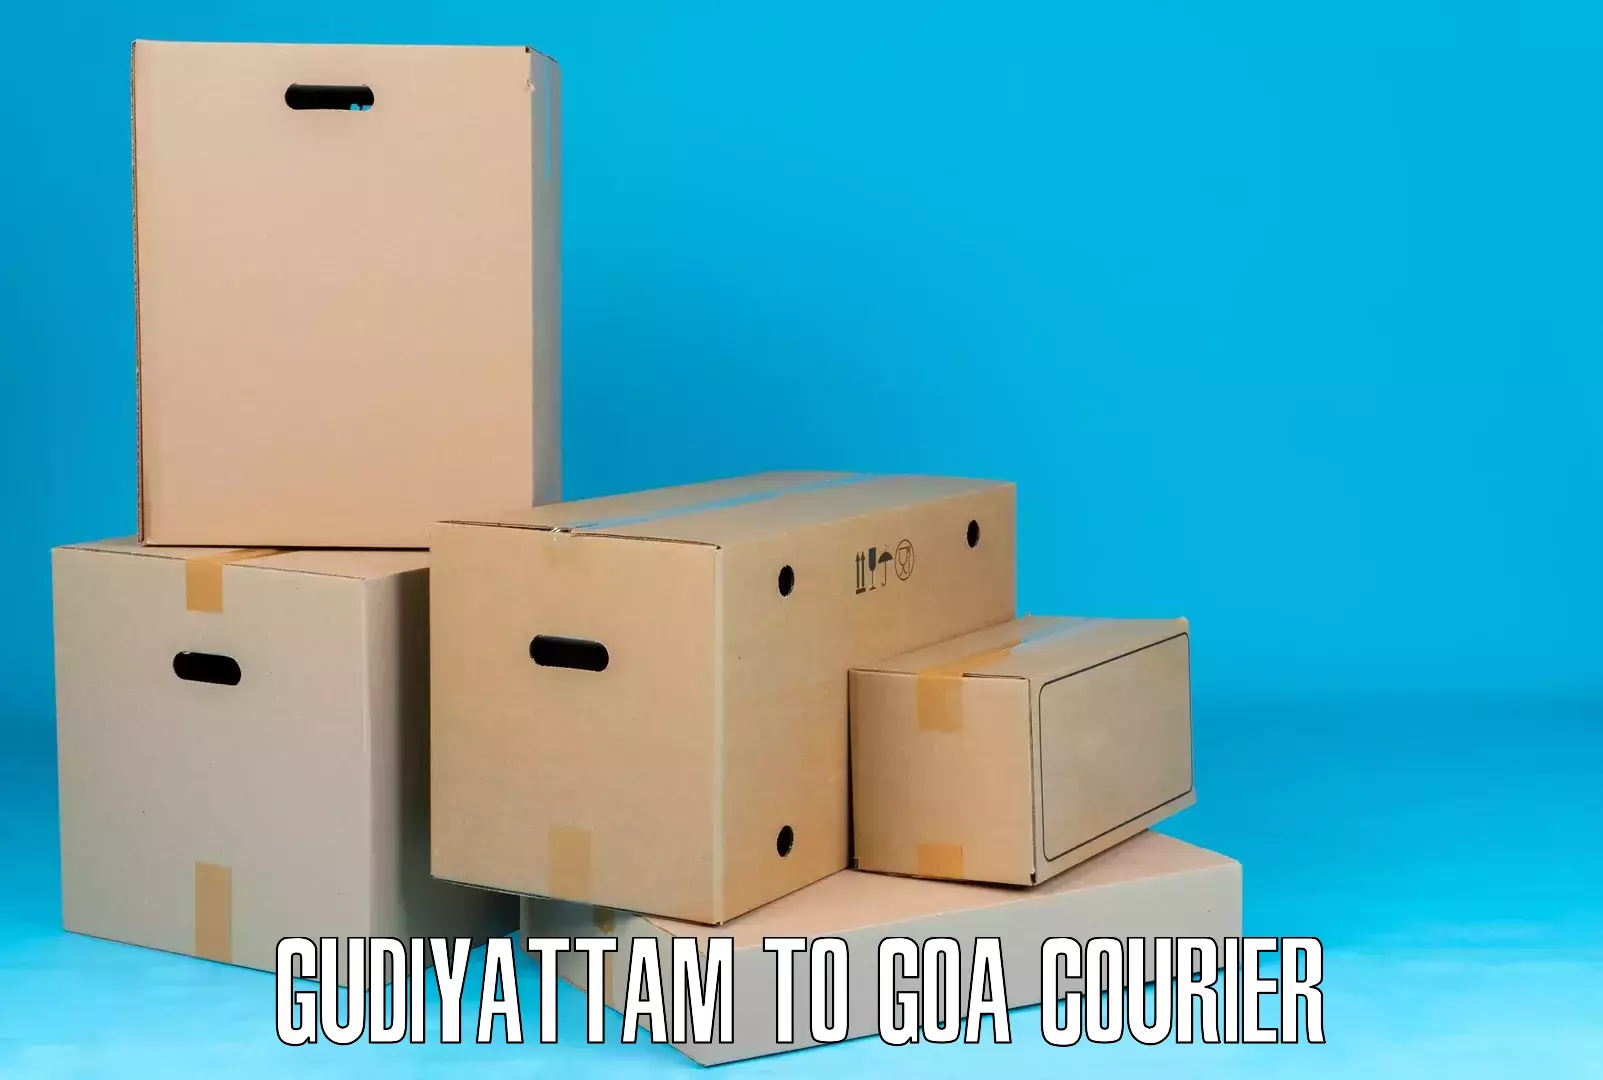 Comprehensive logistics solutions Gudiyattam to Goa